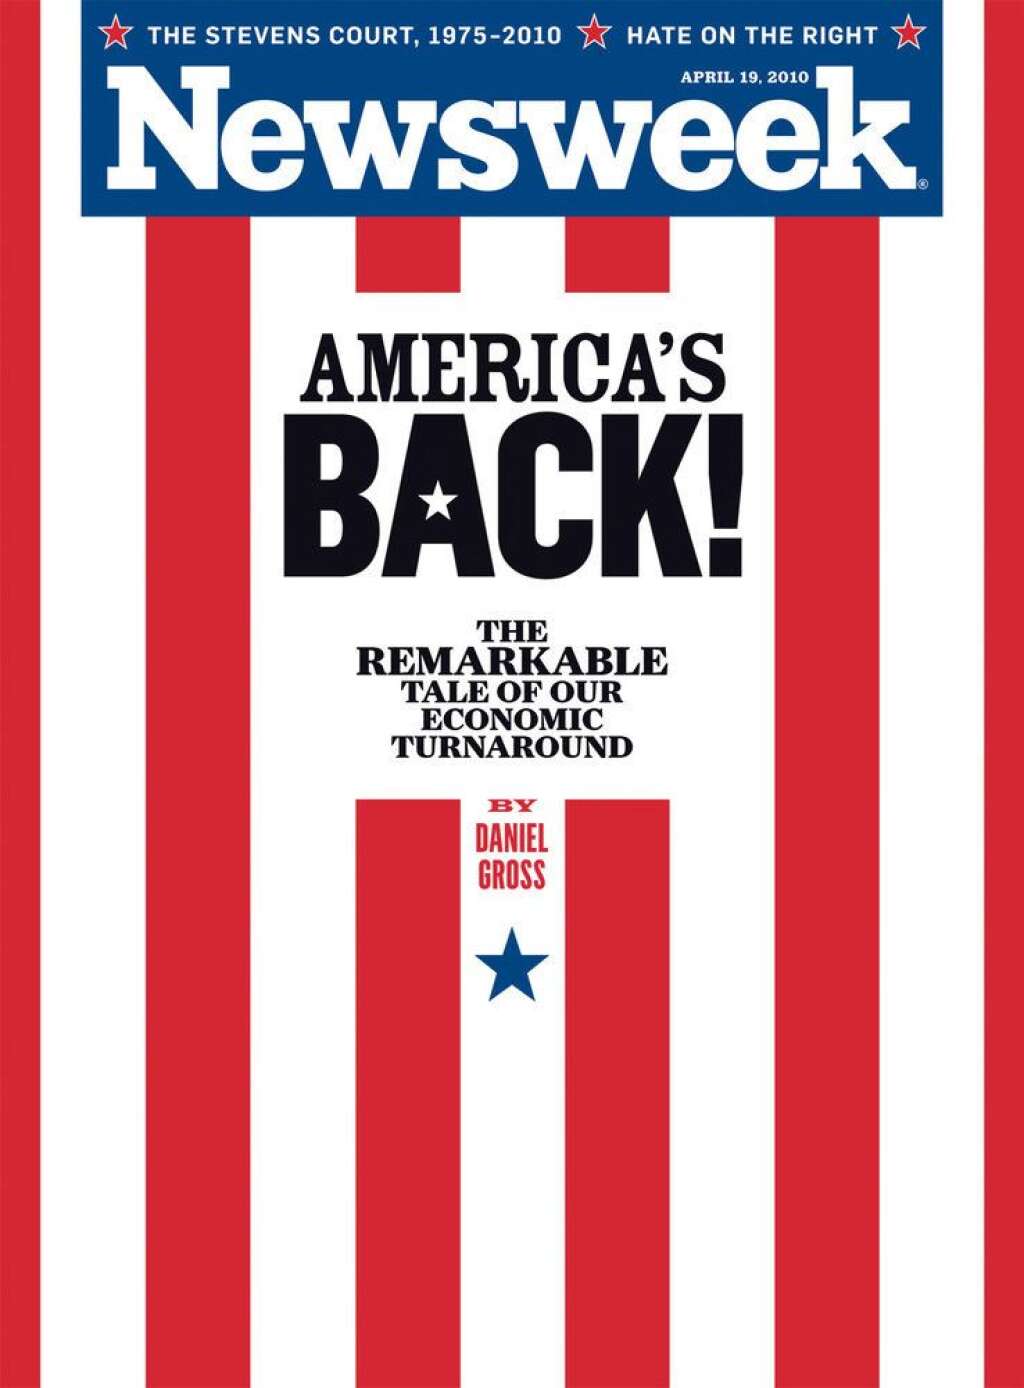 L'édition du 19 avril 2010 - "L'Amérique est de retour !" - en référence au rebond économique qu'ont connu les États-Unis en 2010.